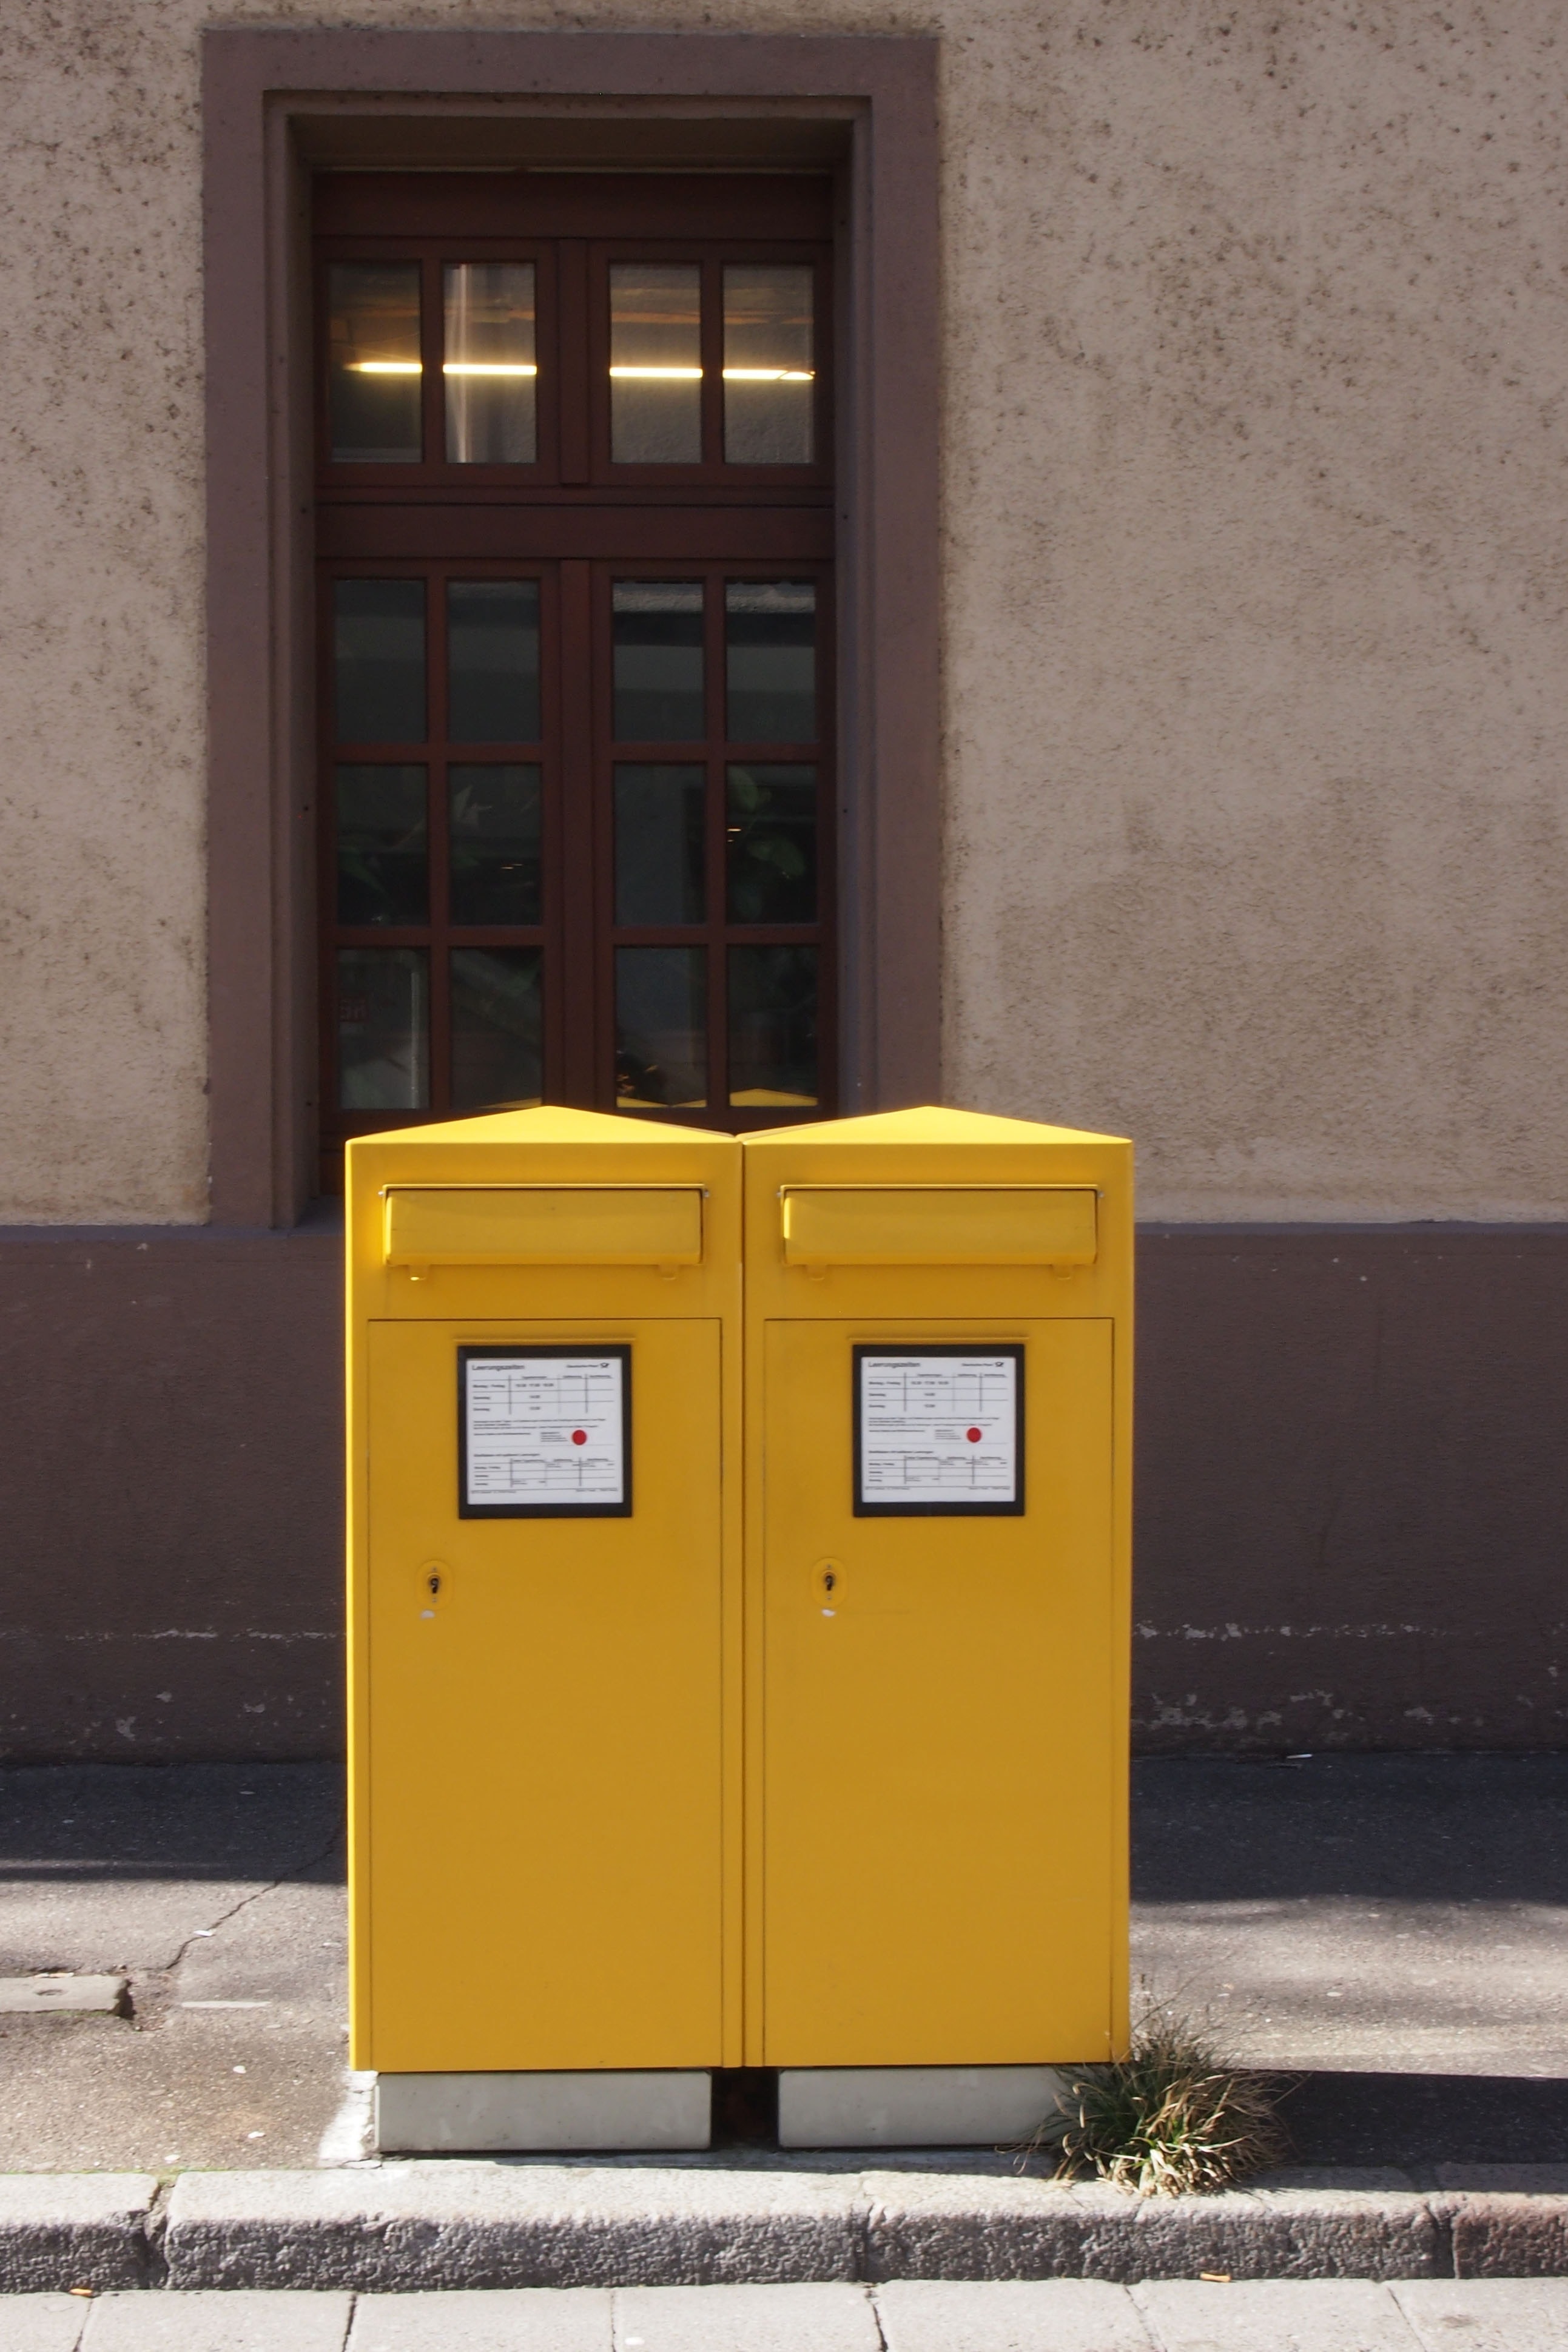 yellow trash bins on gray concrete road